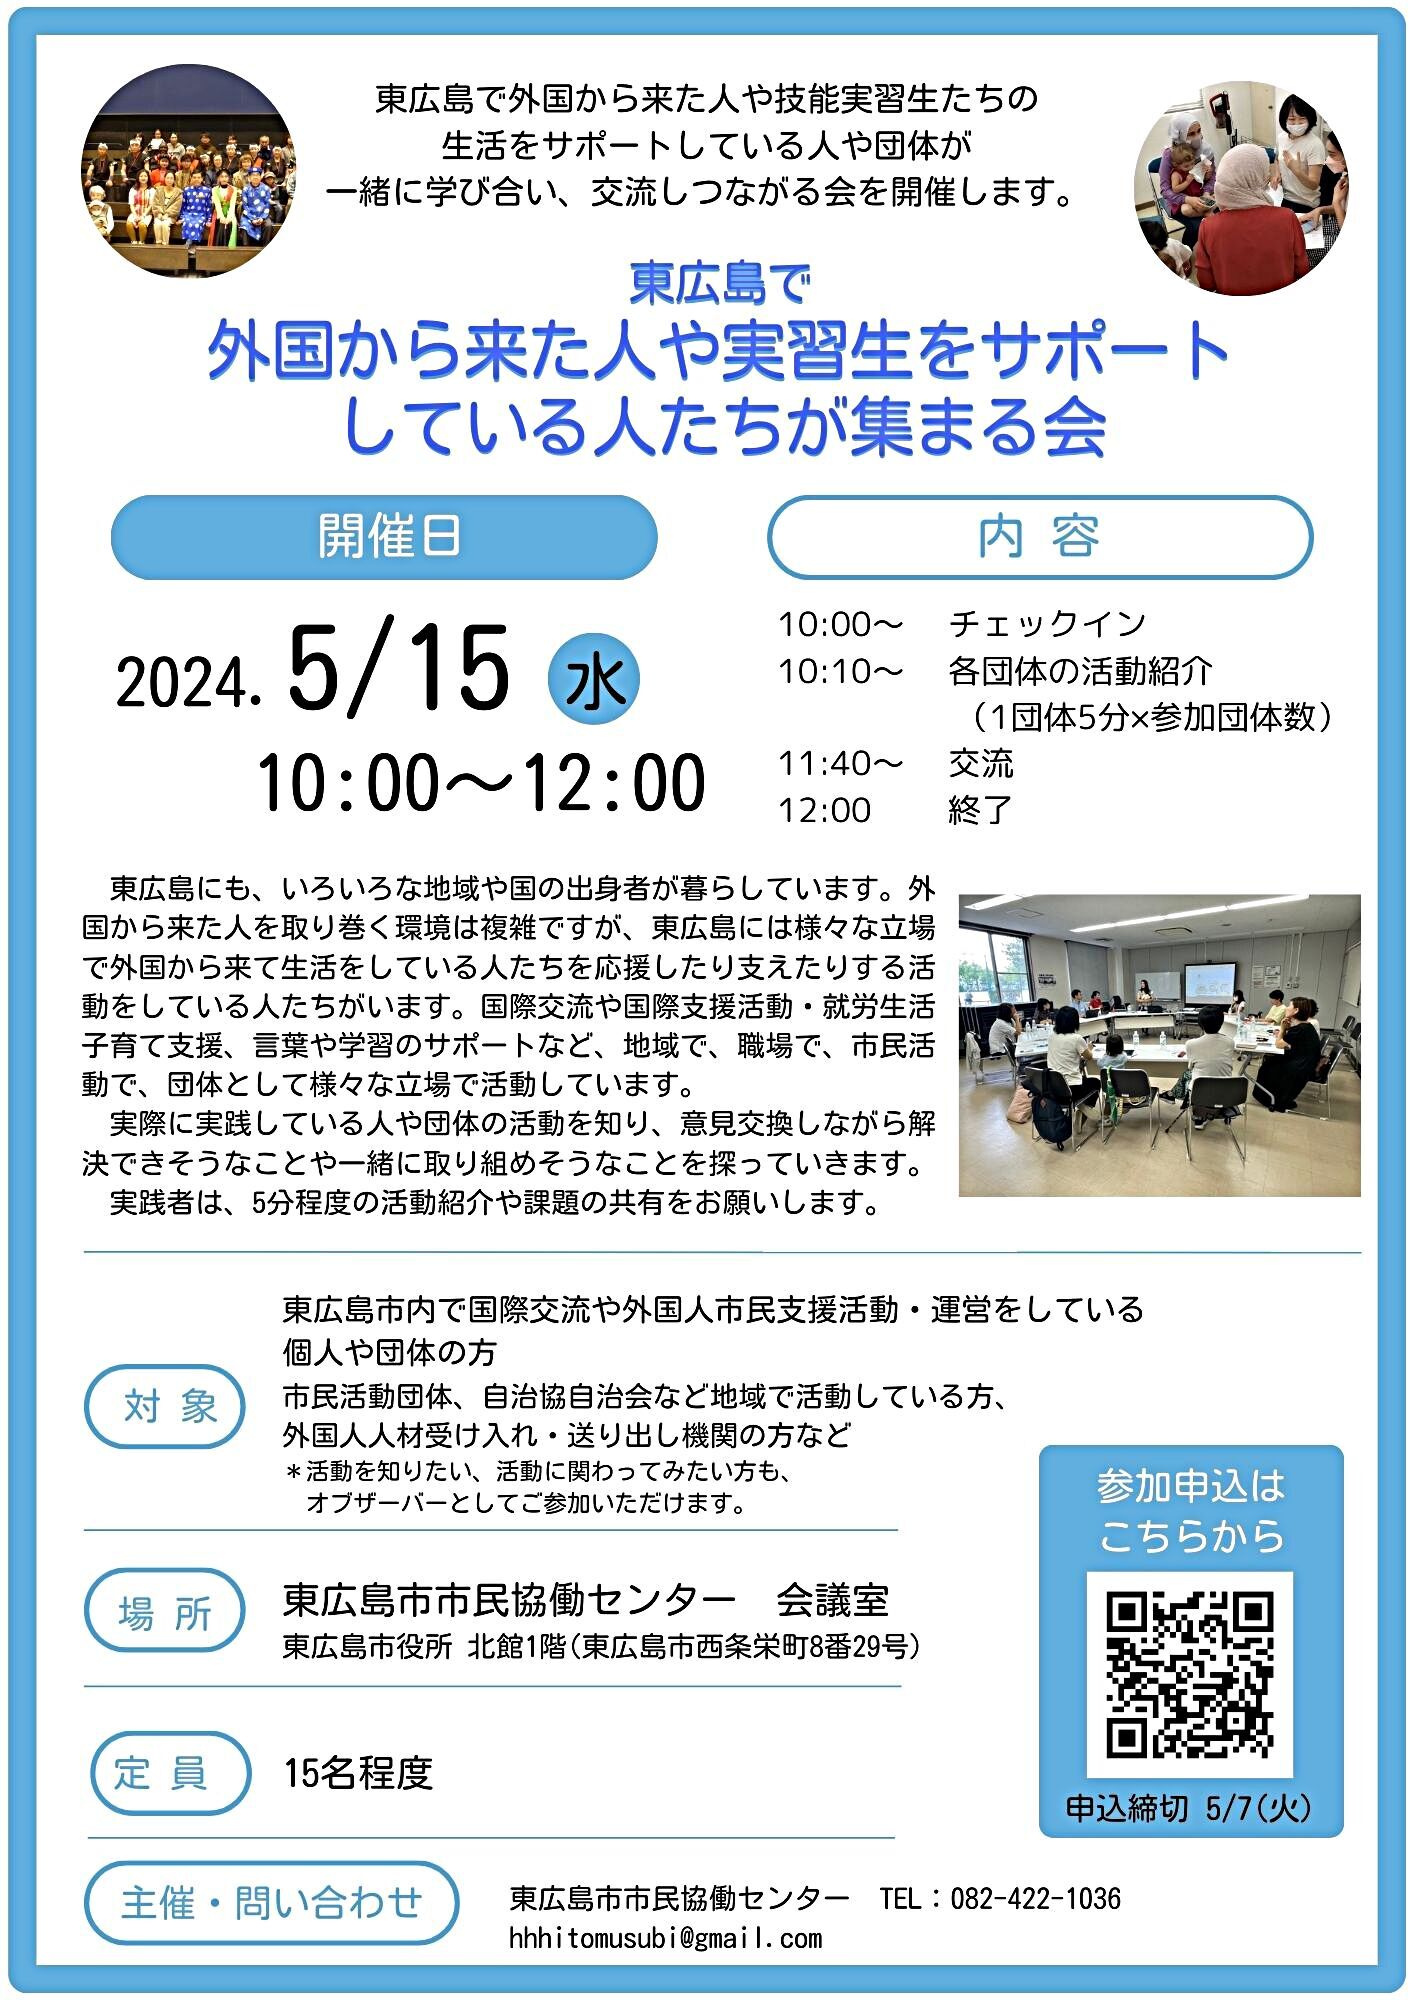 東広島で外国から来た人や実習生をサポートしている人たちが集まる会